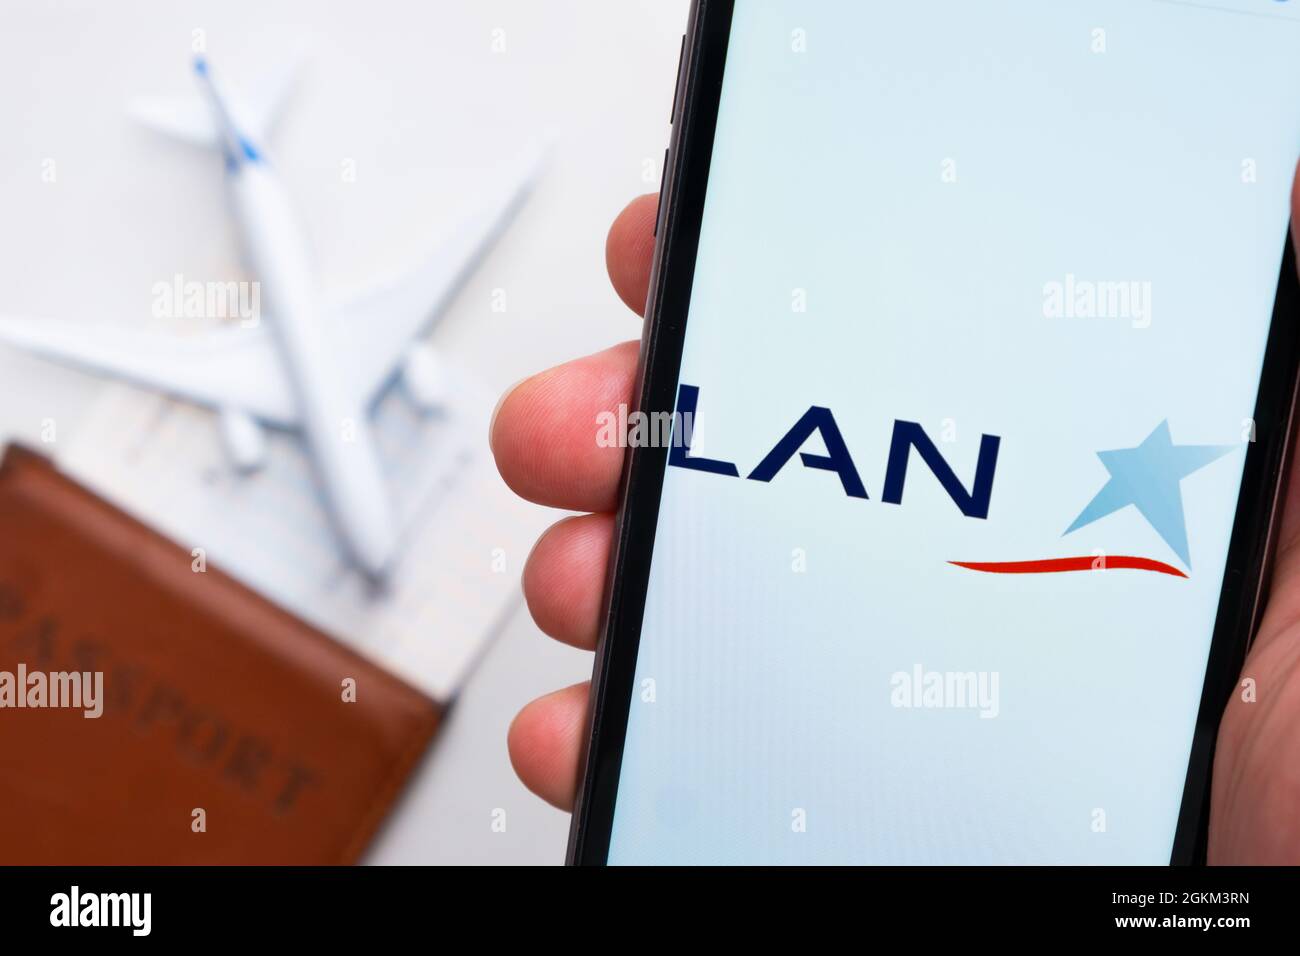 Application ou logo de la compagnie aérienne LAN affiché sur un téléphone mobile avec passeport, carte d'embarquement et avion en arrière-plan, septembre 2021, San Francisco Banque D'Images